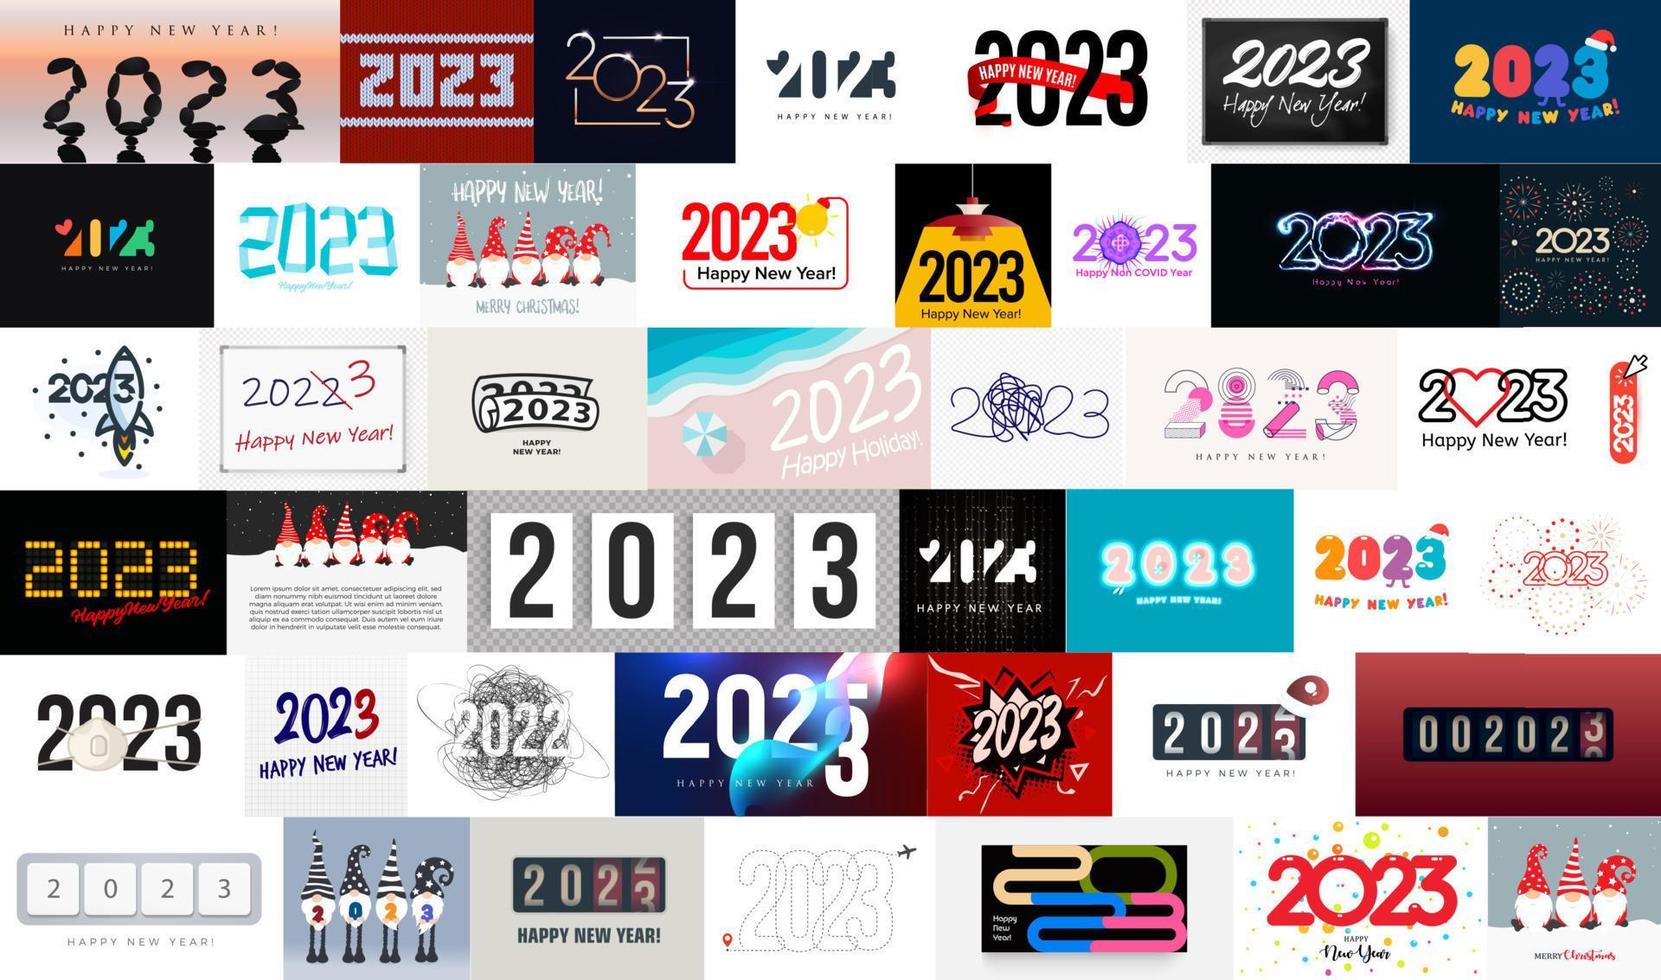 grande coleção de cartazes e logotipos de ano novo de 2023 para decoração de eventos de ano novo, cartões de felicitações, calendário e banners de férias de inverno. ilustração vetorial. vetor